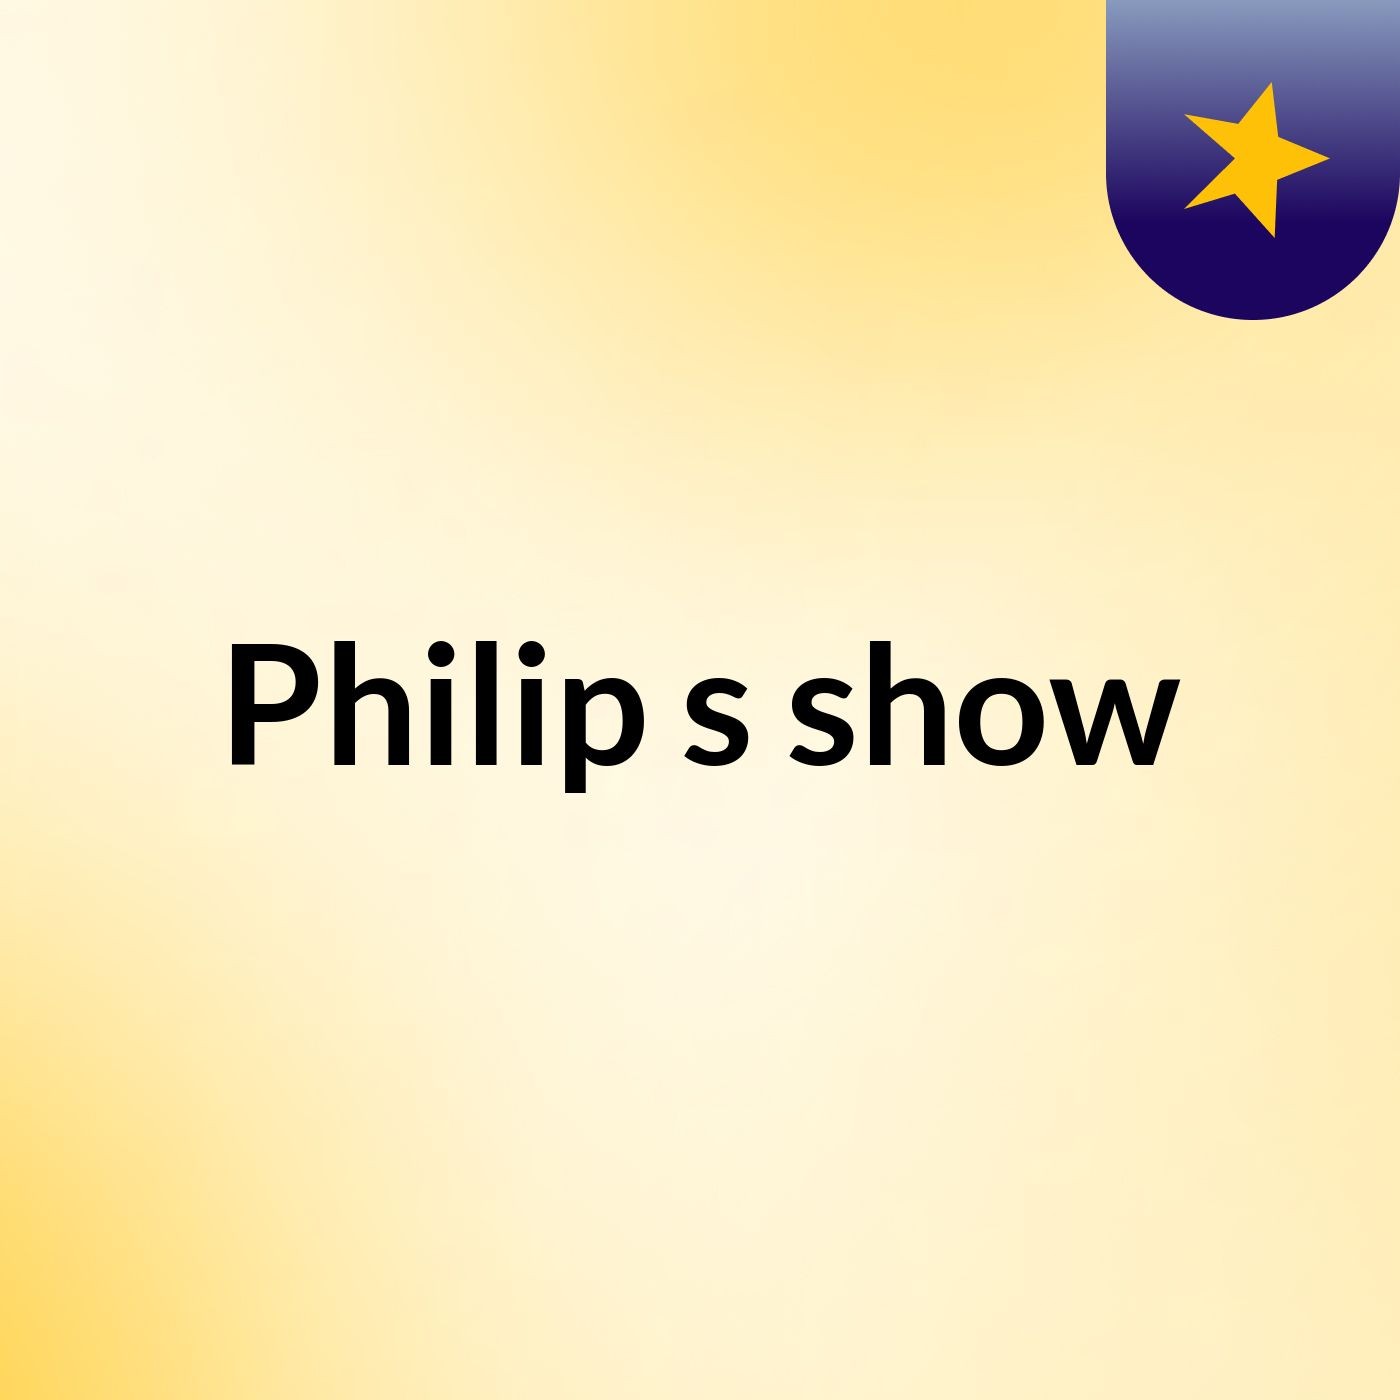 Philip's show